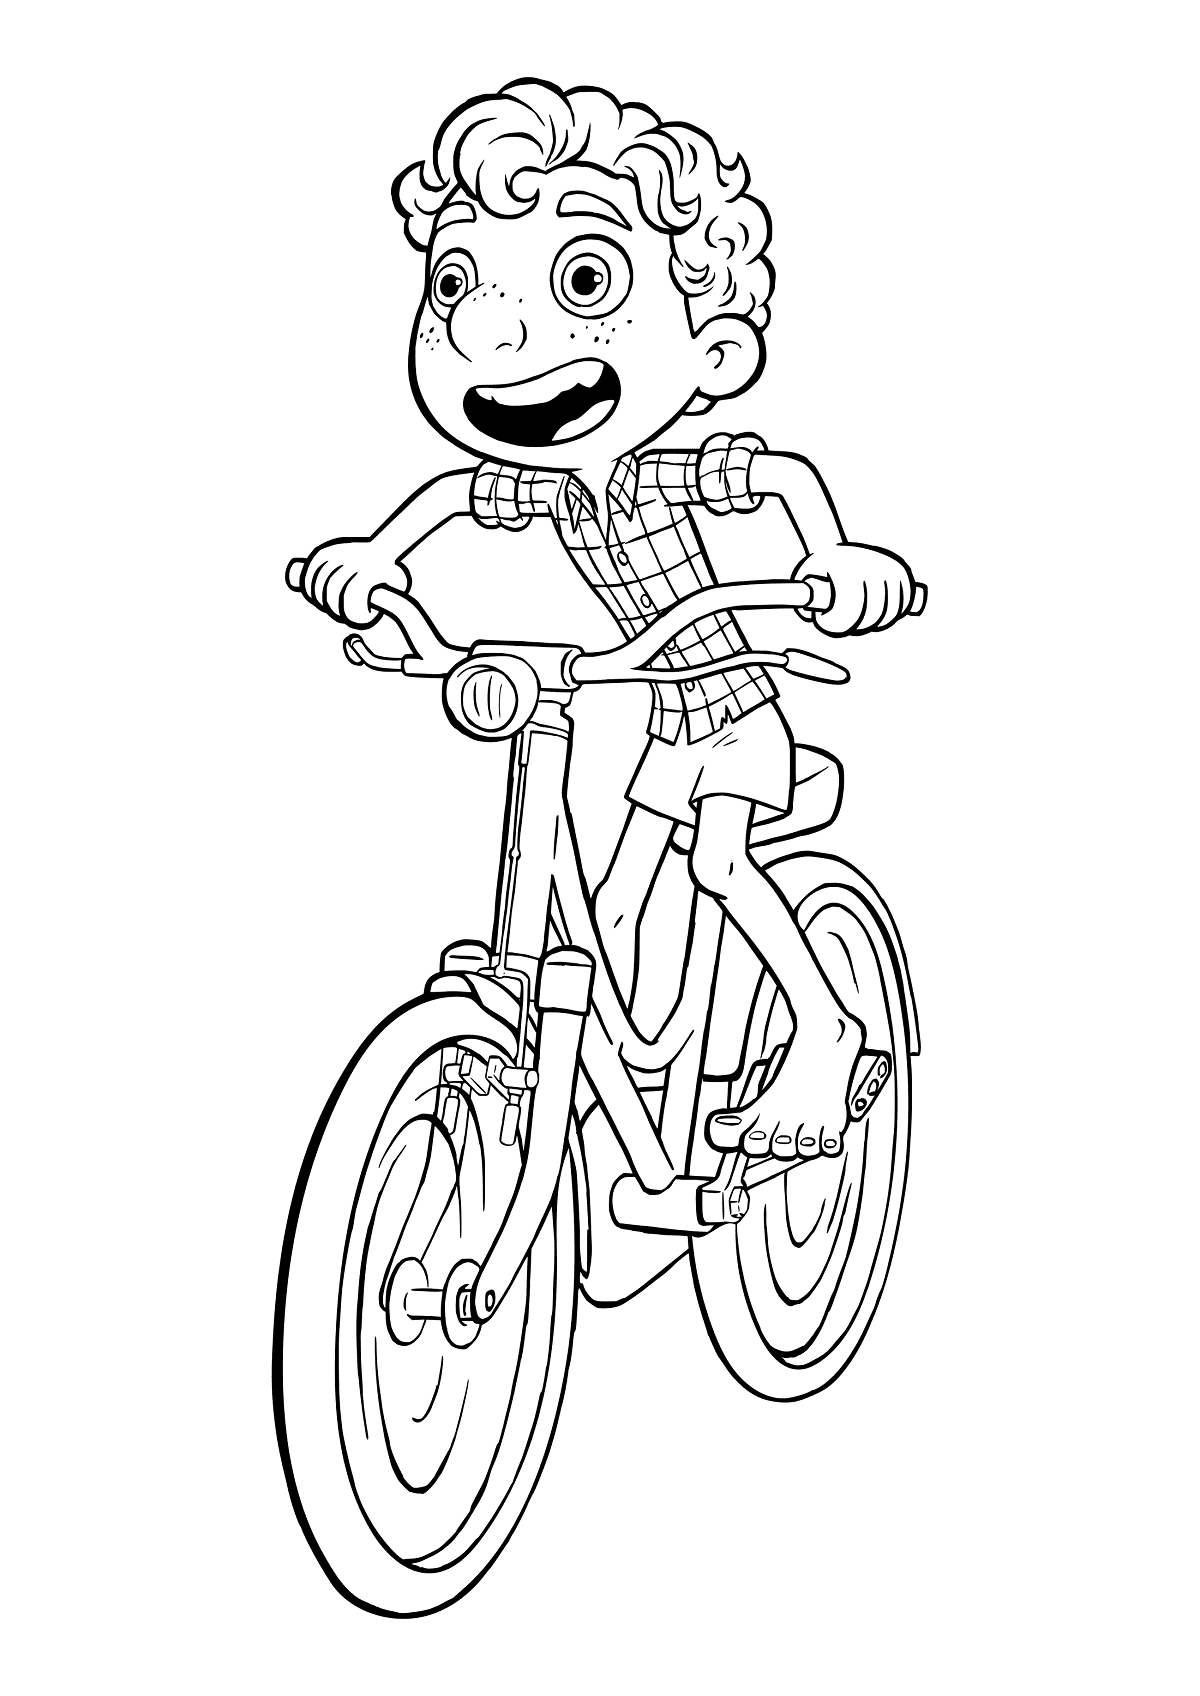 Luca op de fiets van Luca